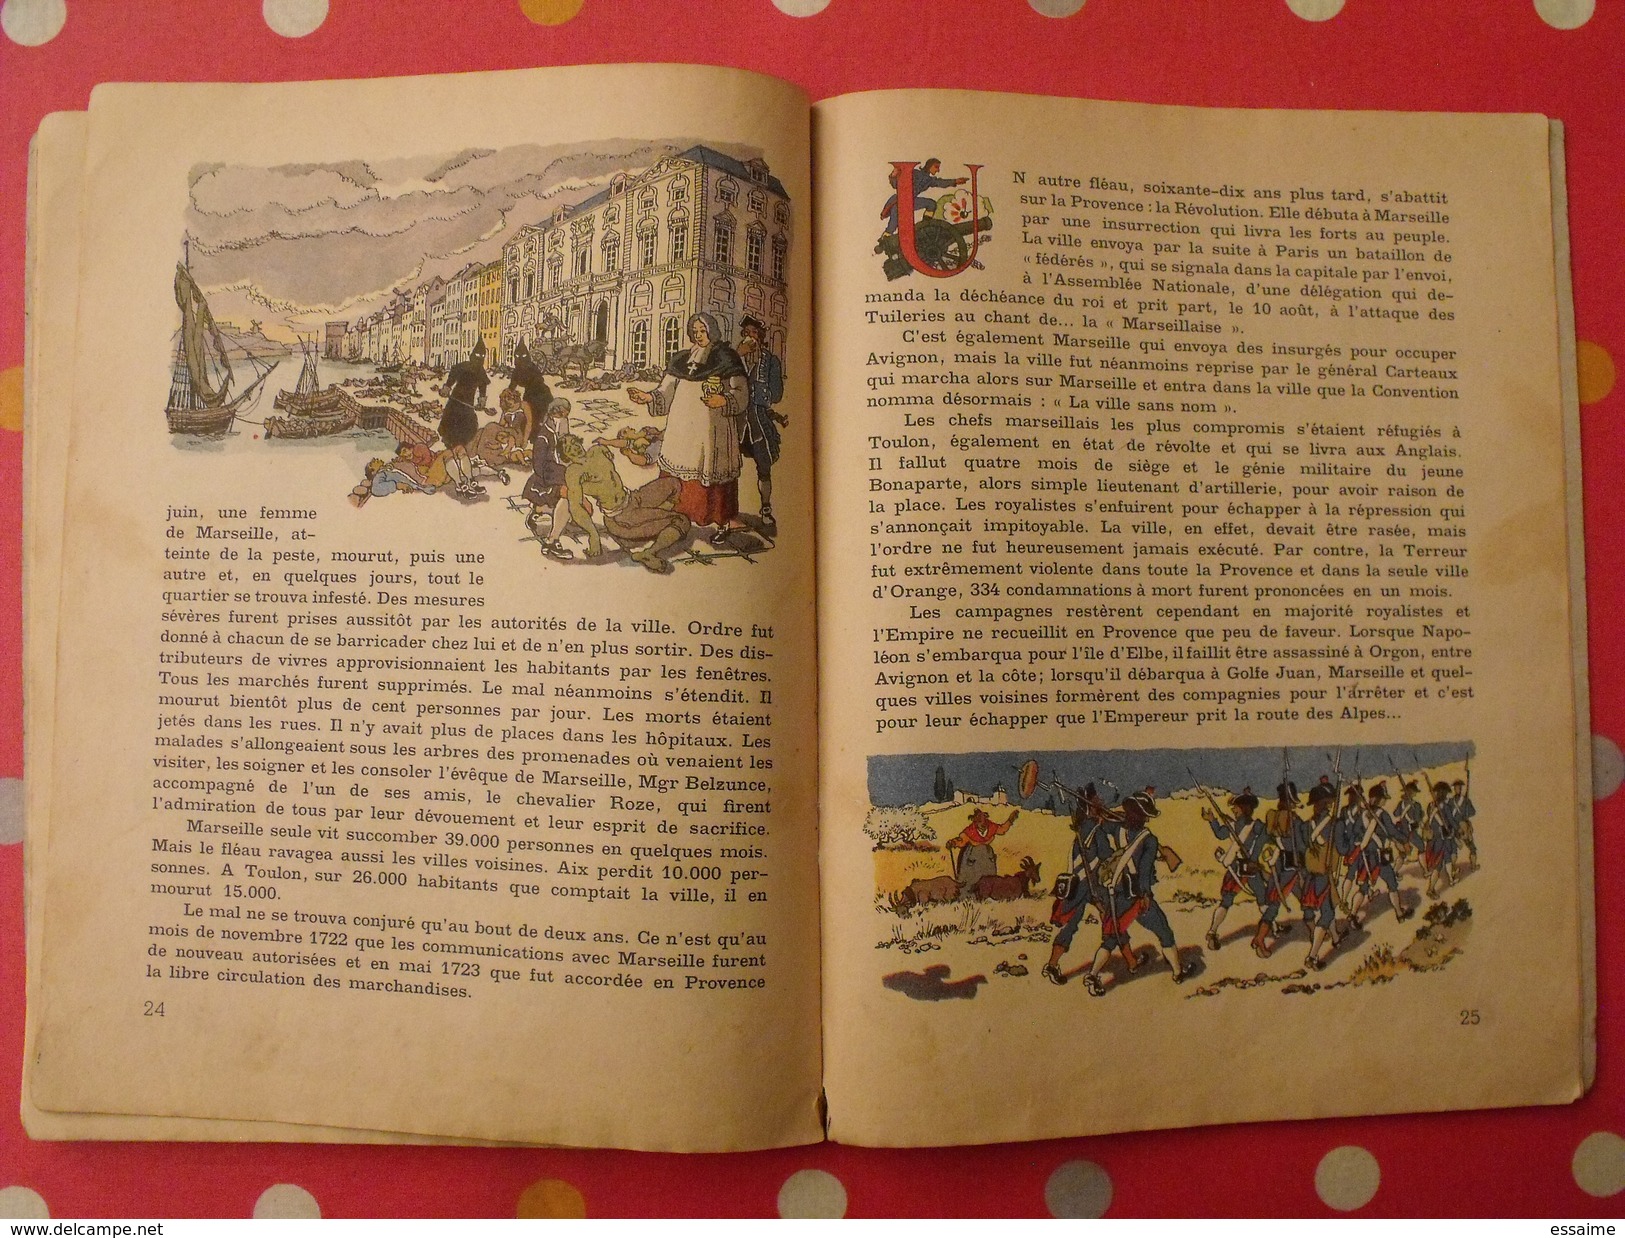 Histoire de la Provence. Paluel Marmont. illustré par Jacques Liozu. Gründ 1943